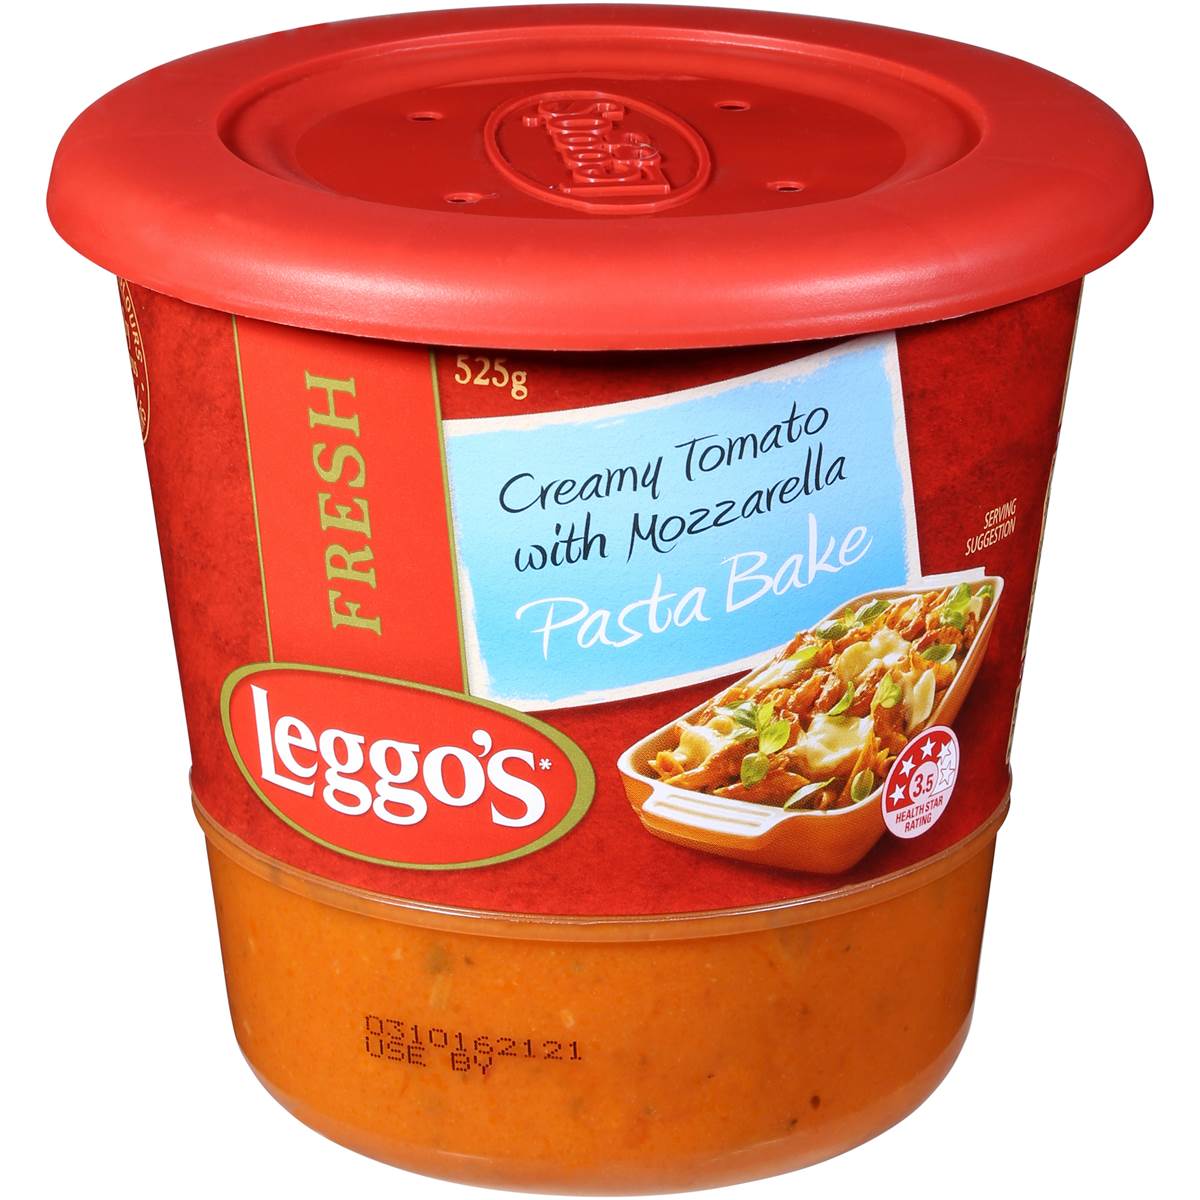 Leggos Pasta Bake Creamy Tomato & Mozarella